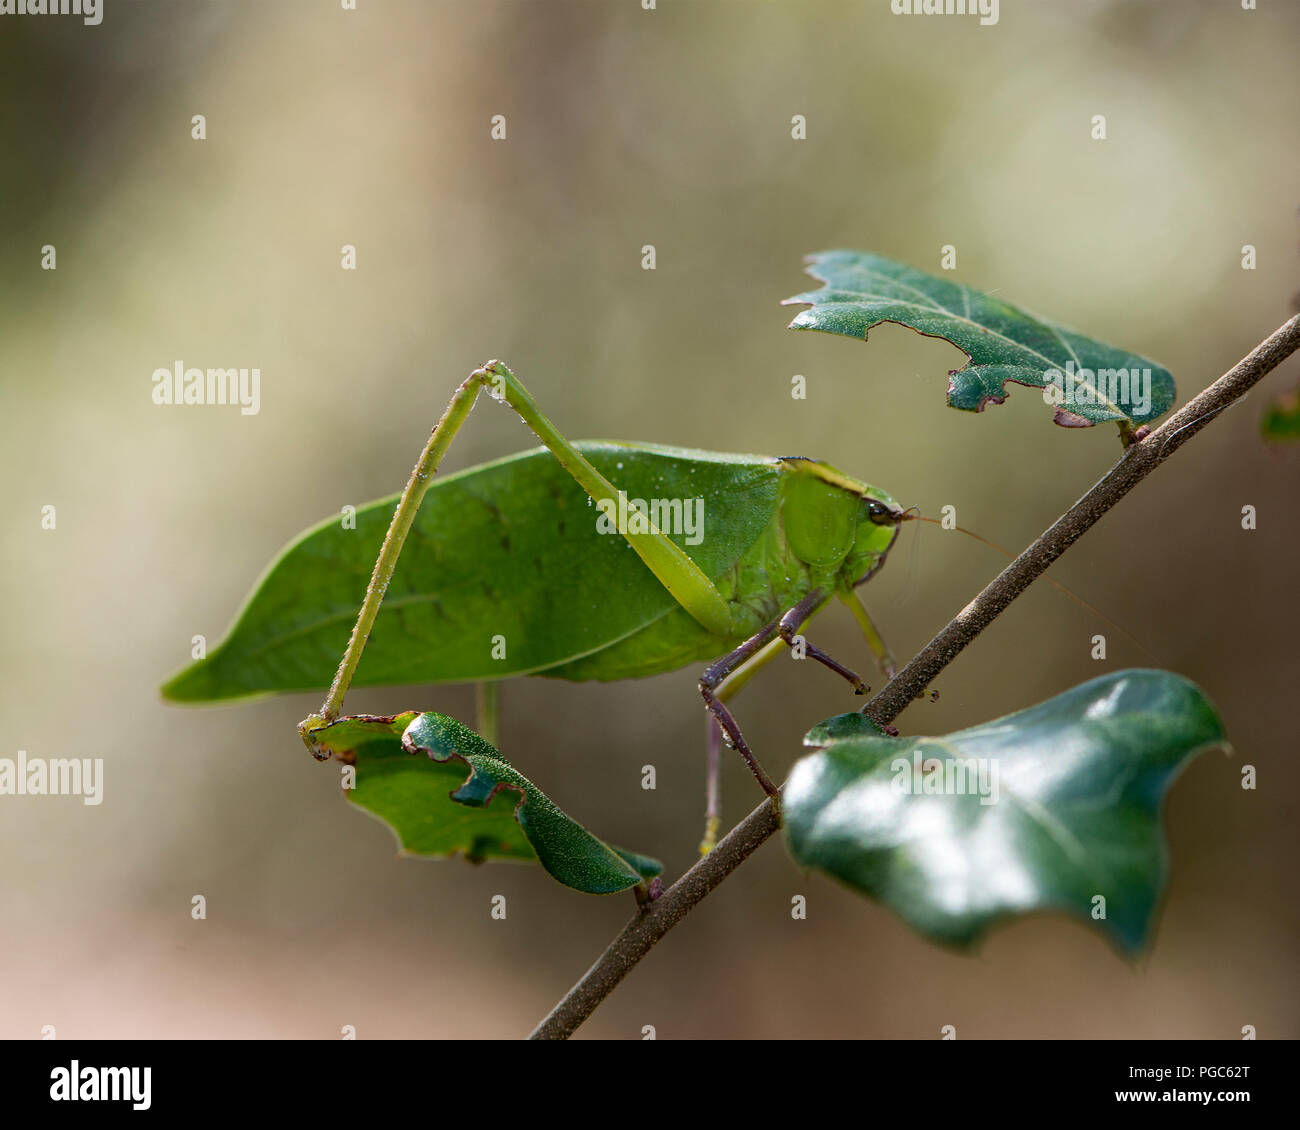 Katydid insetto su un ramo verde con un camuffamento visualizzando il suo colore verde, le antenne e gli occhi, nel suo ambiente e dintorni. Foto. Immagine. Foto Stock